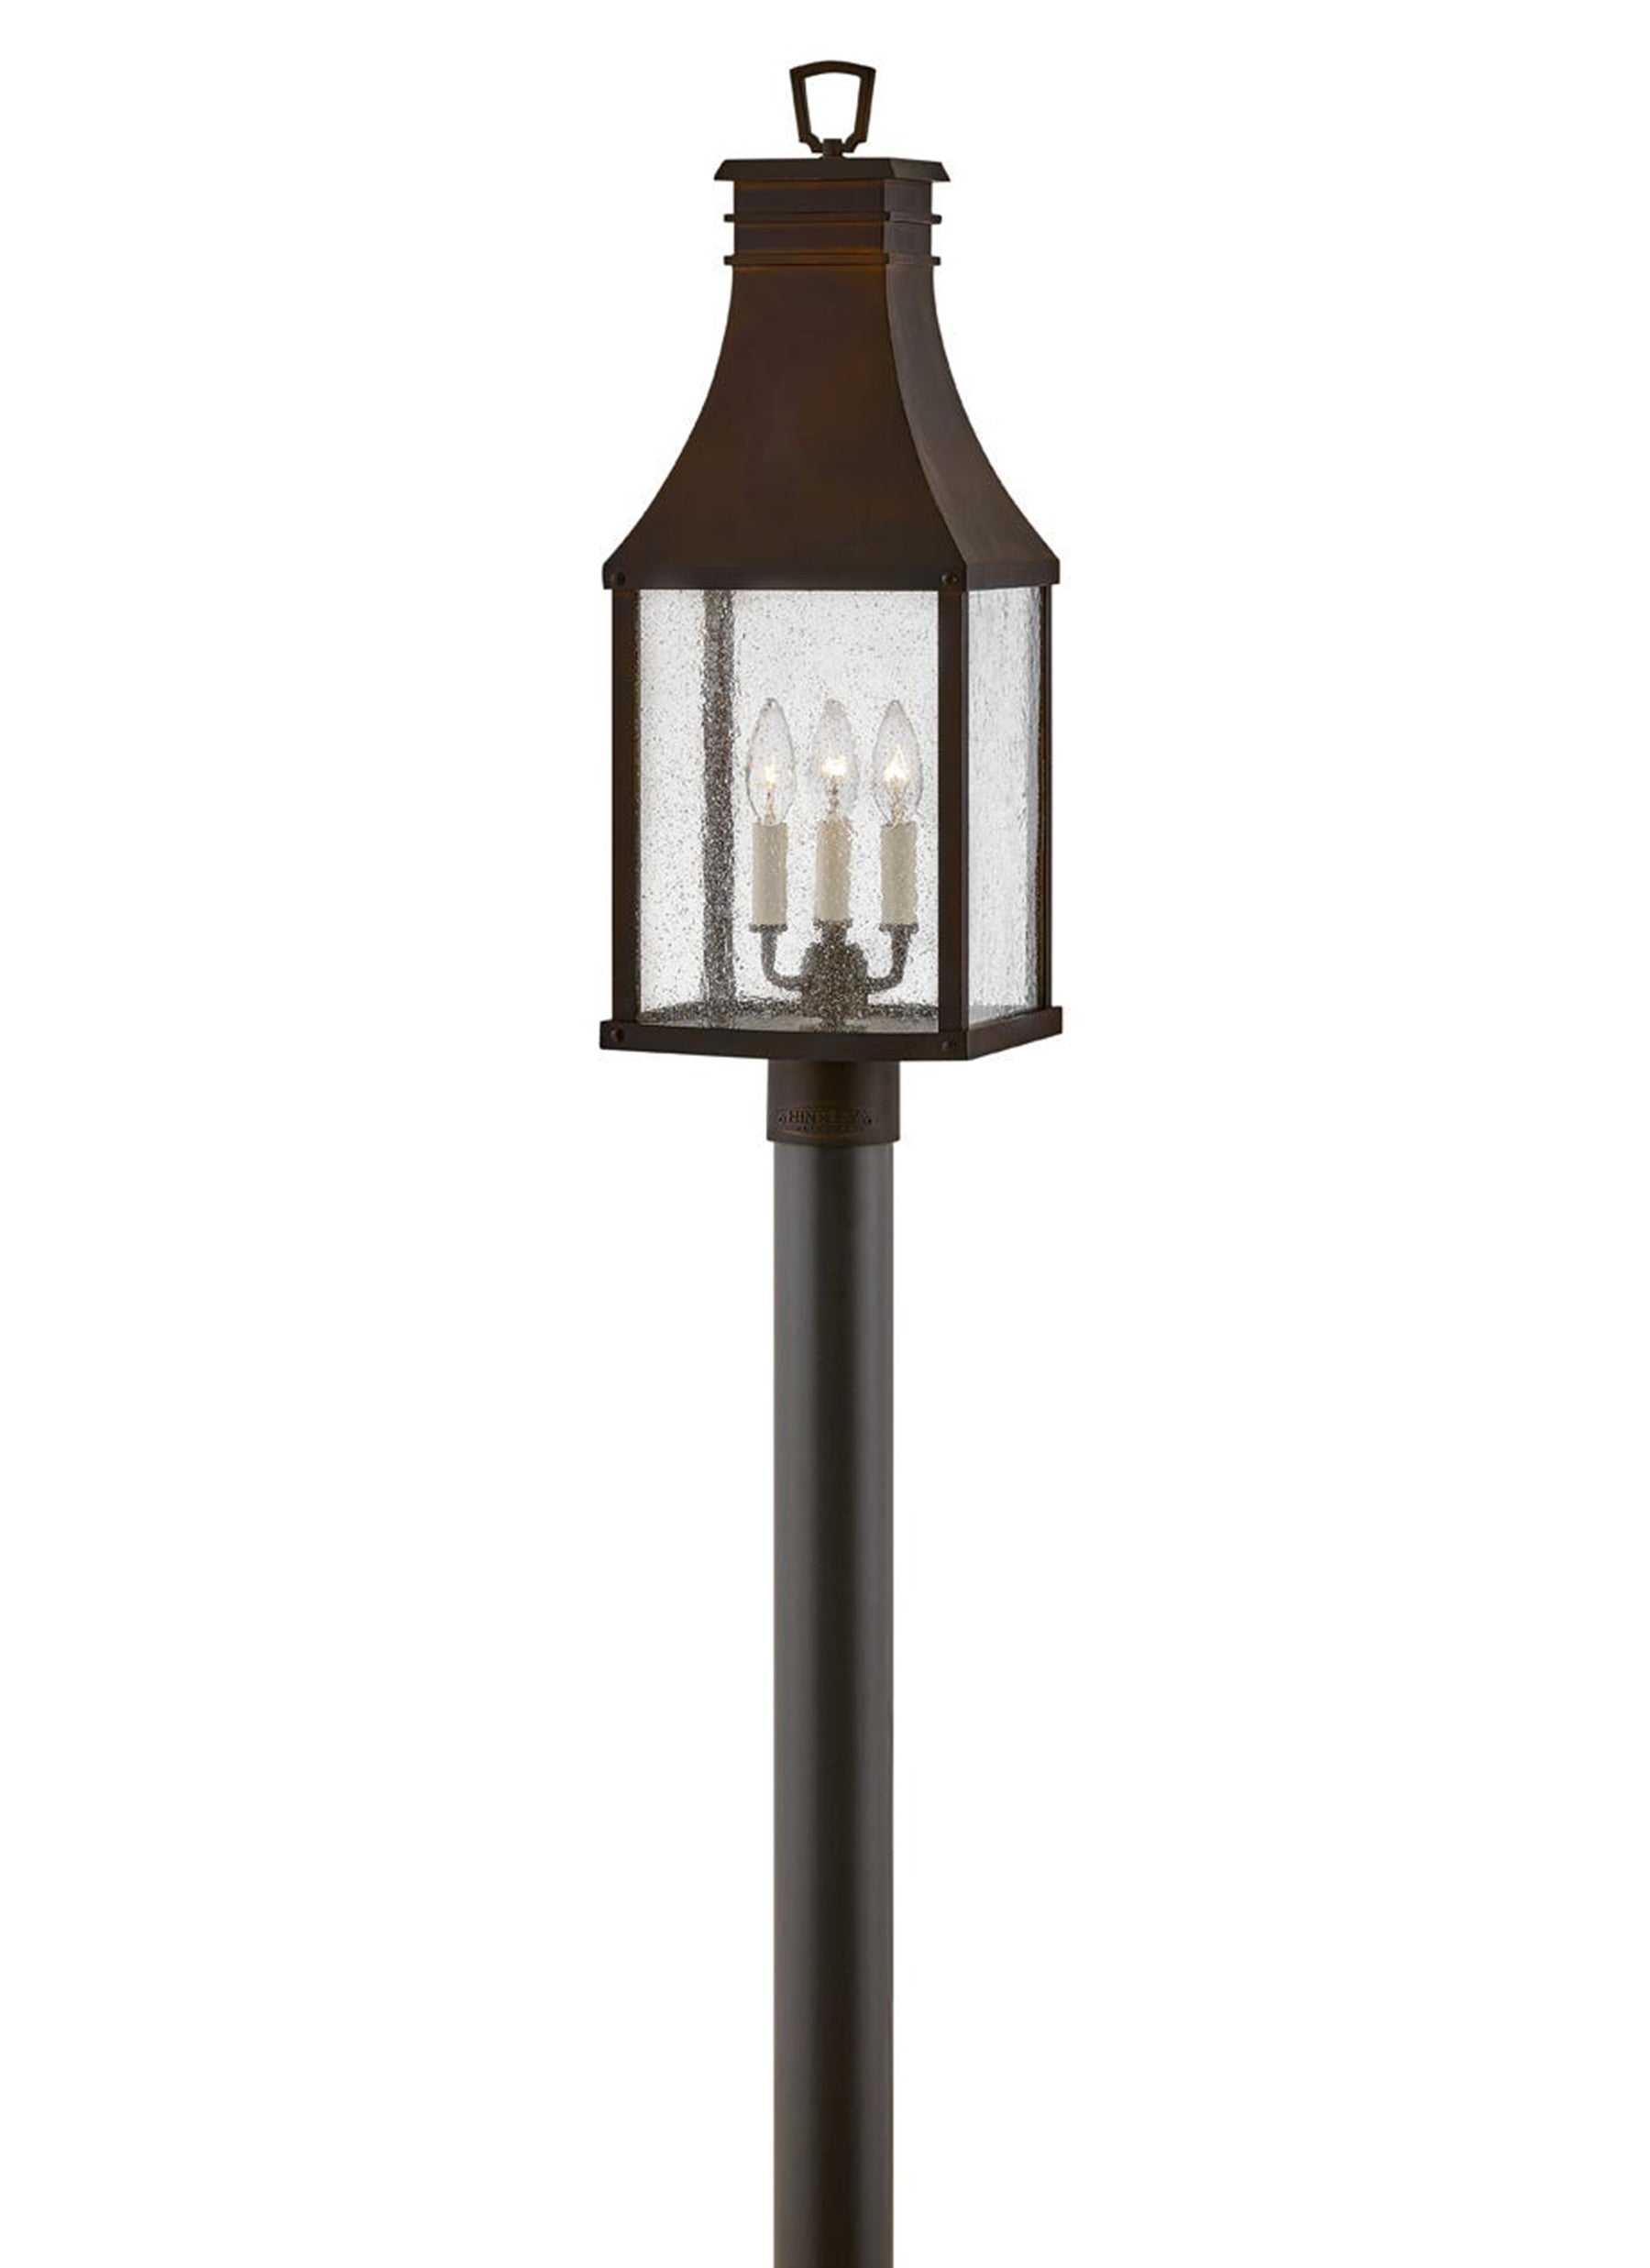 Beacon Hill 3L large pier mount lantern - 17461BLC